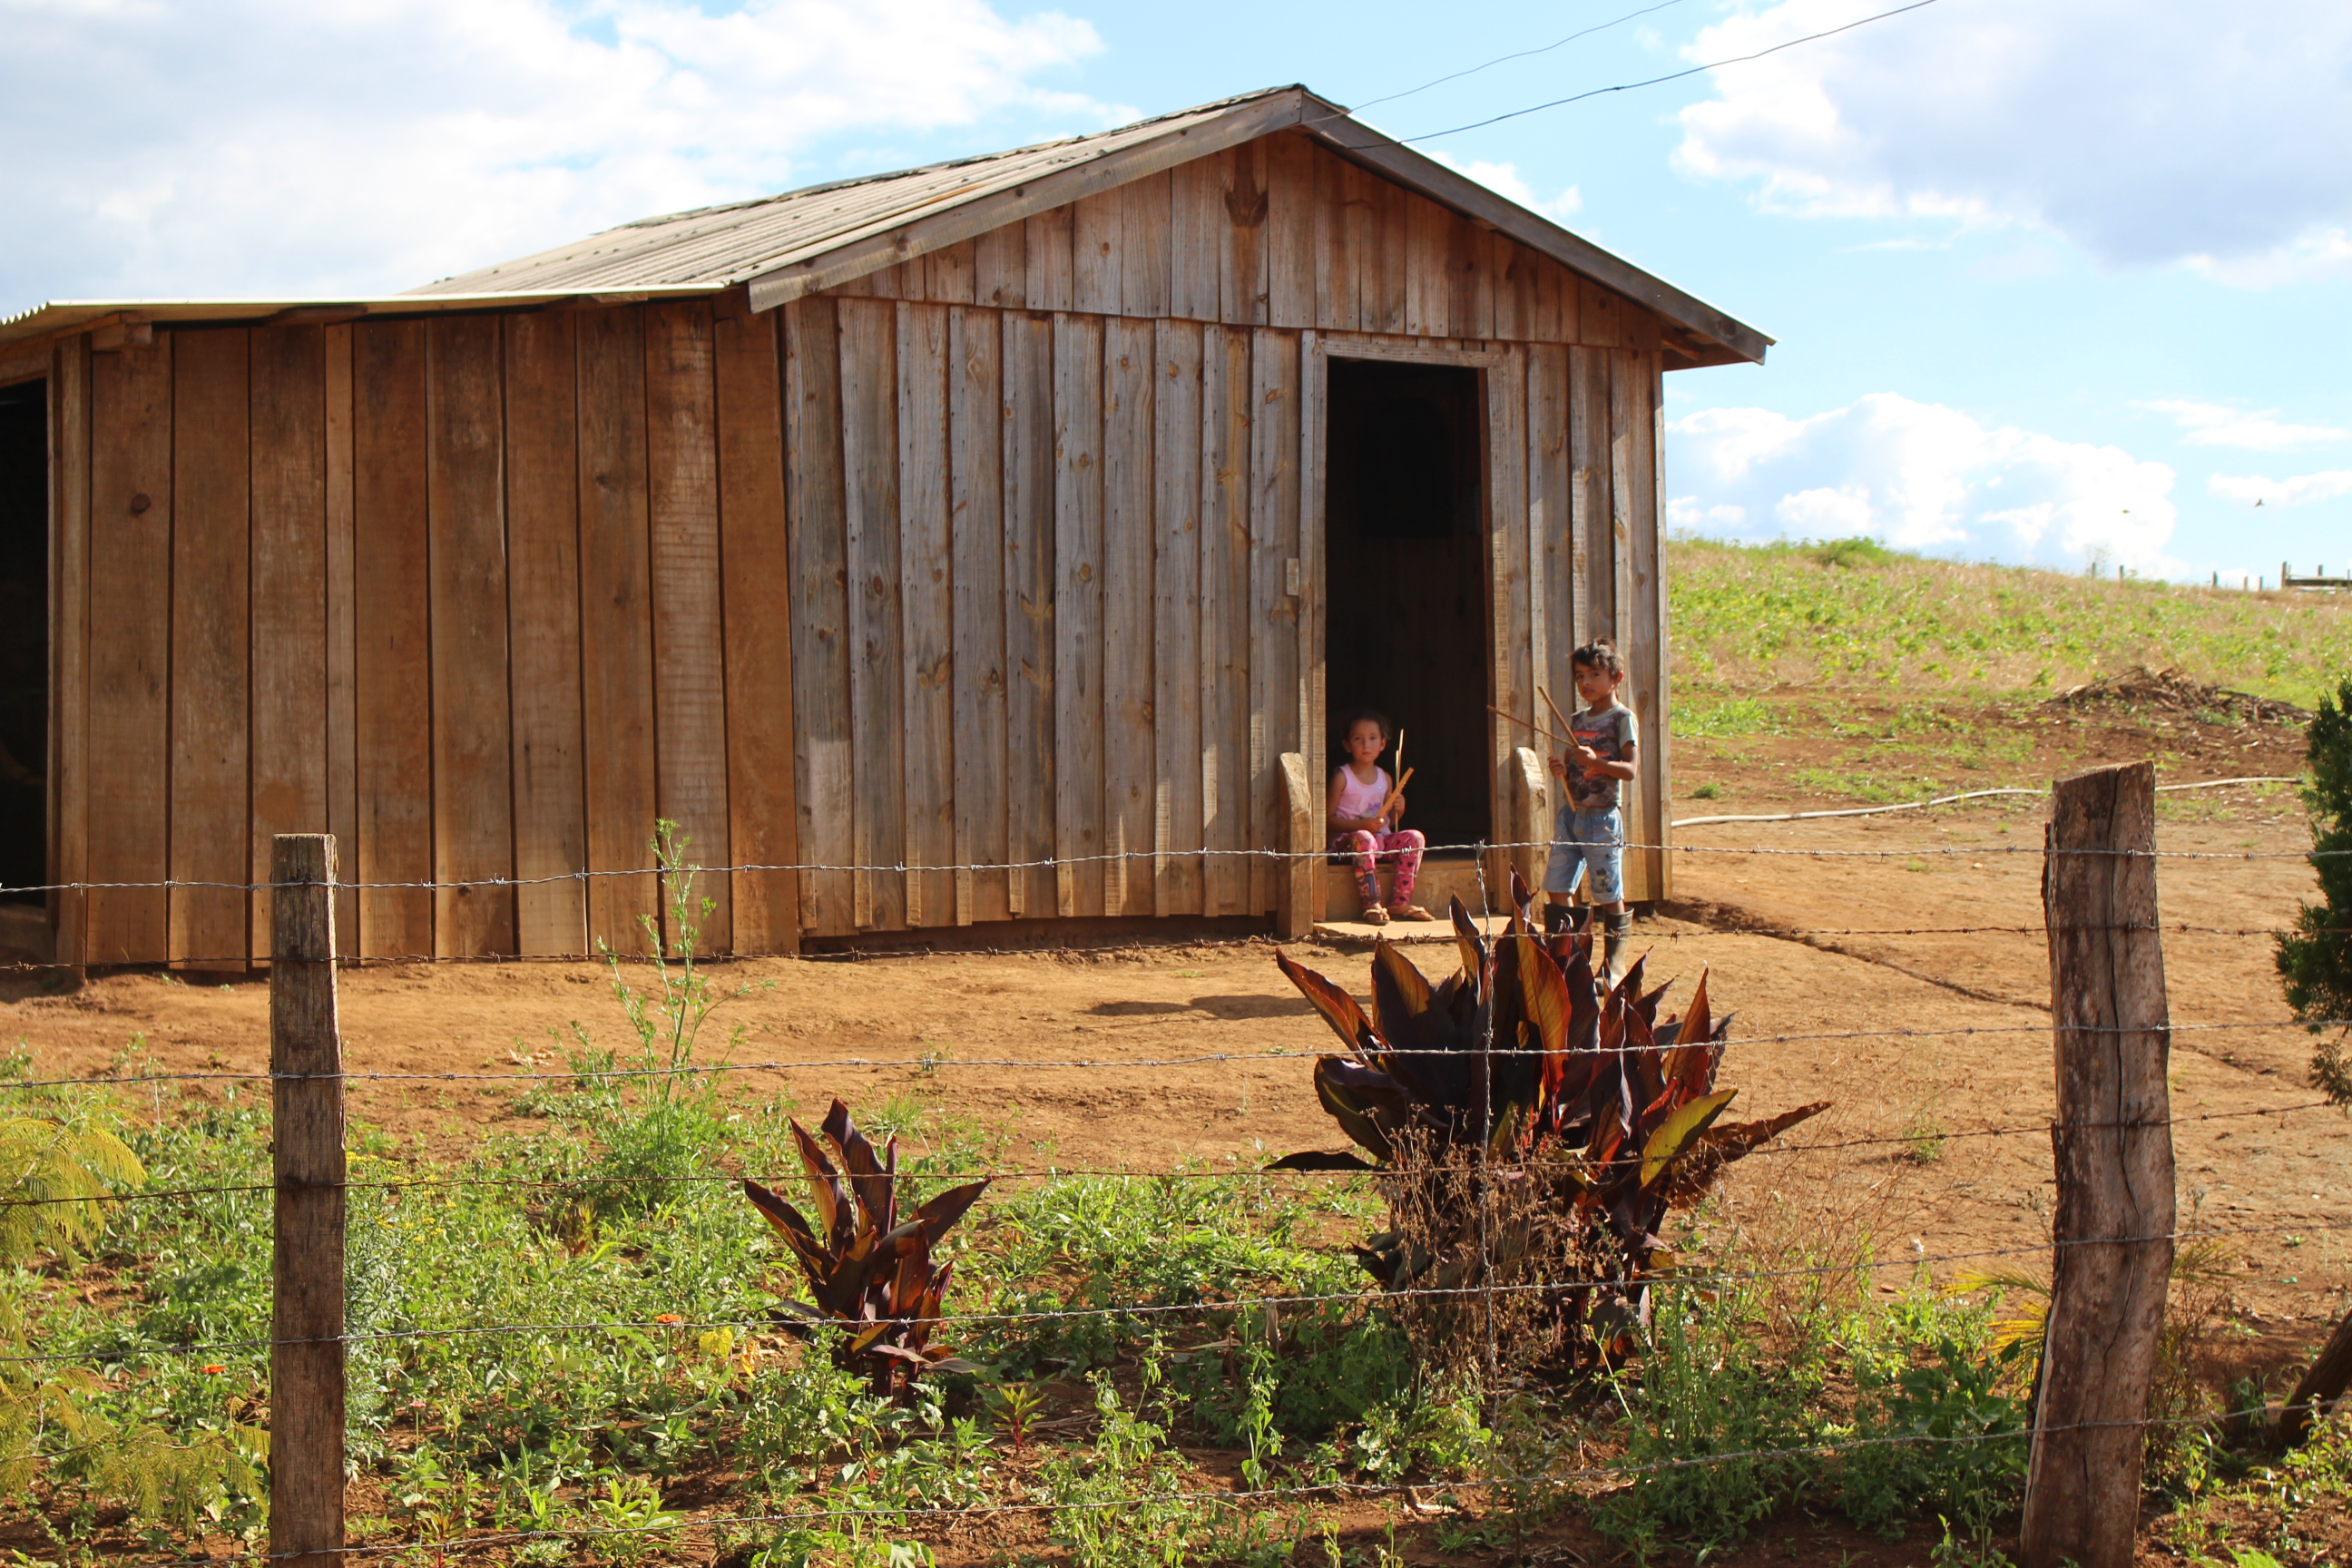 Área da comunidade tradicional quilombola já está em avançado estágio do processo de desapropriação e indenização. Foto: Lizely Borges